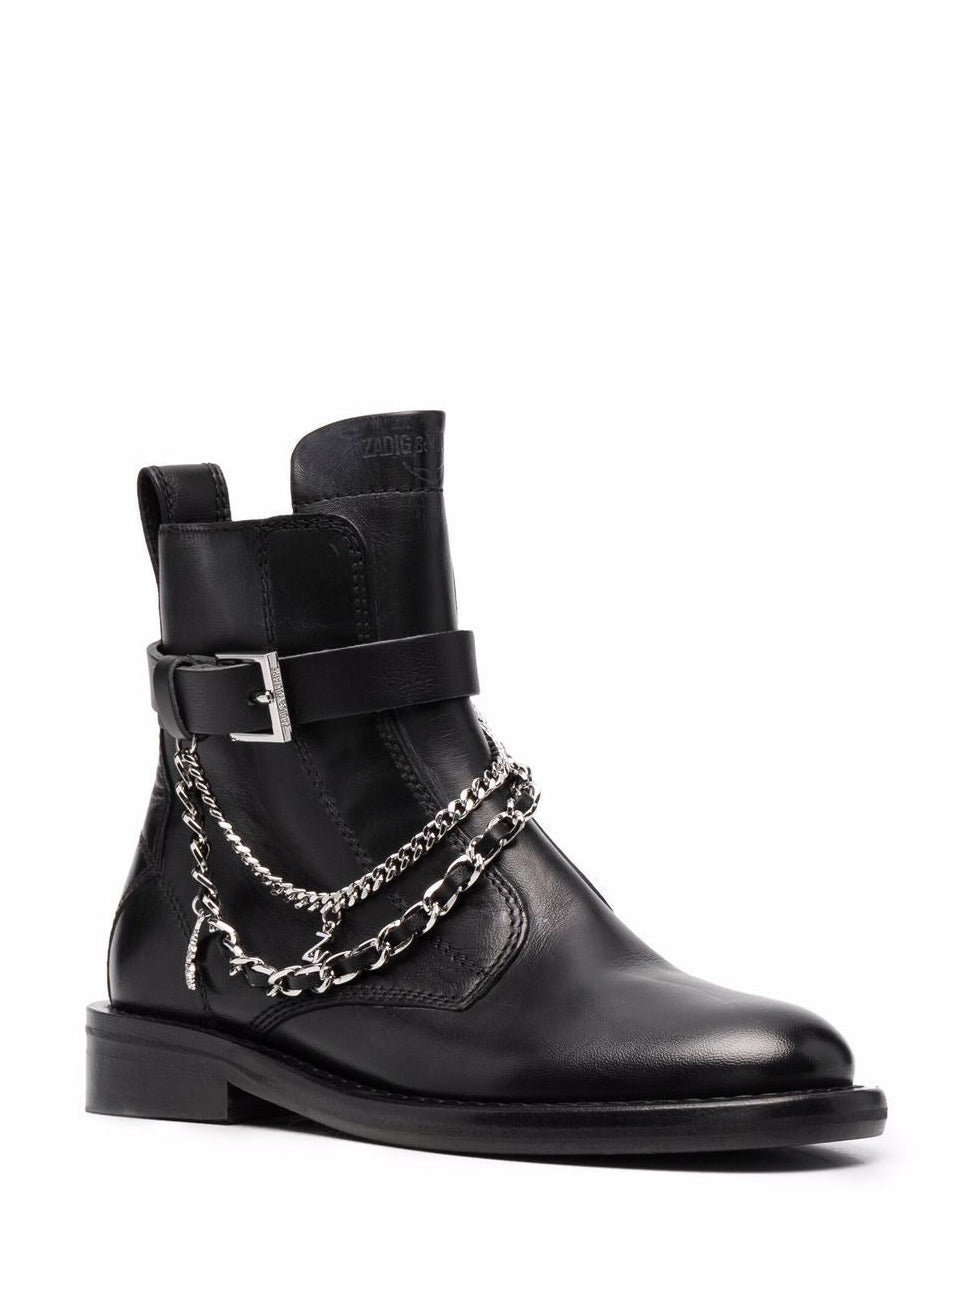 ZADIG & VOLTAIRE: Laureen high silk lambskin boots, black 